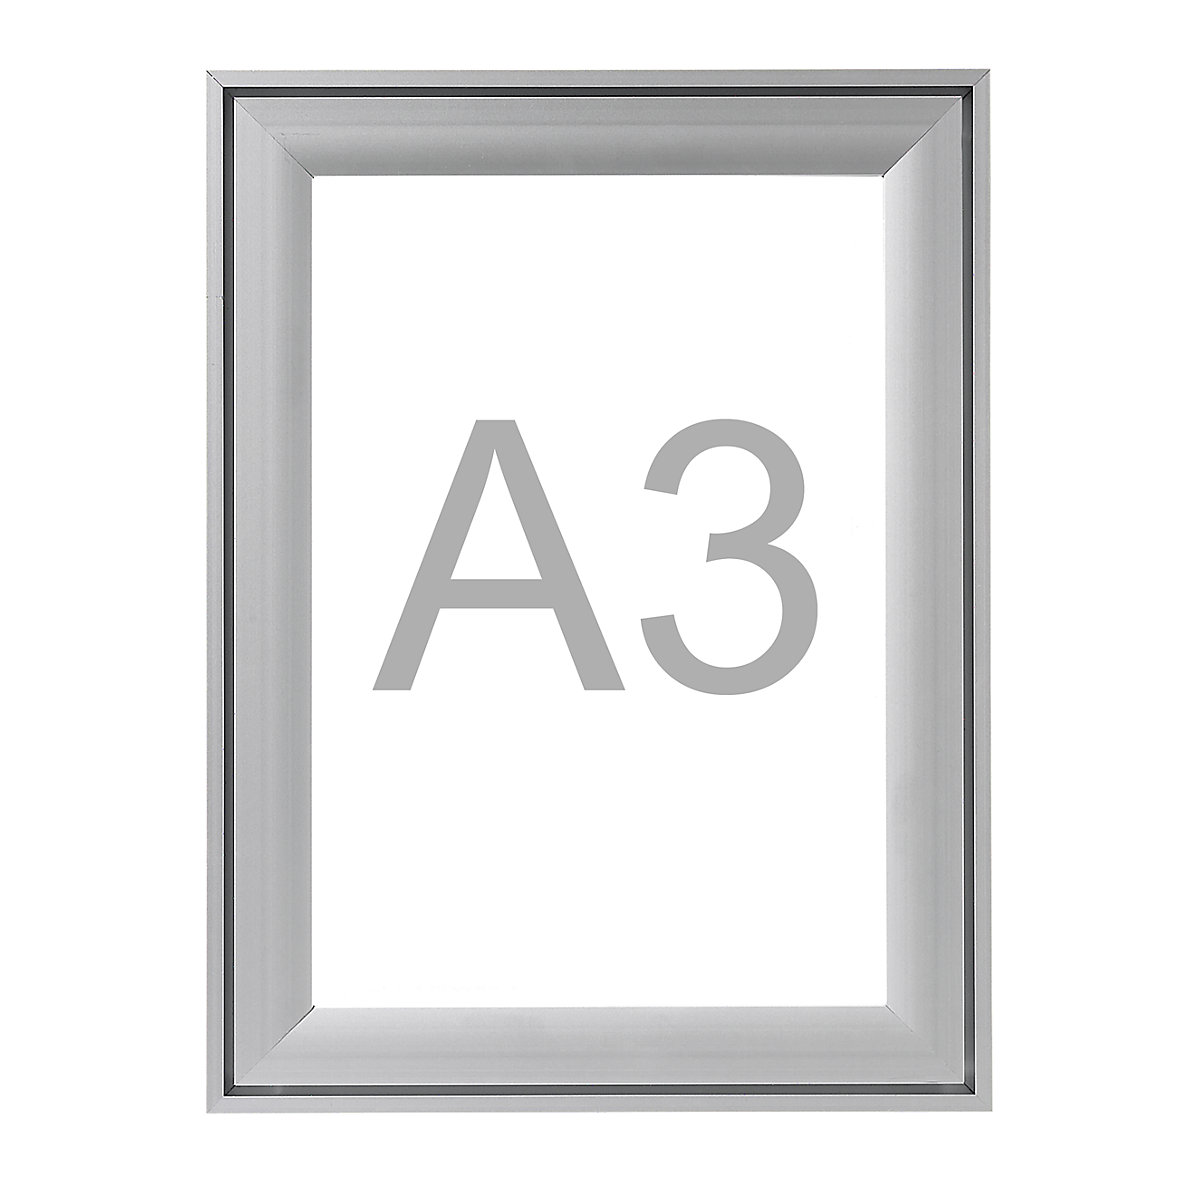 Premium-klapframe, aluminium profiel, VE = 2 stuks, voor A3, h x b = 474 x 351 mm-8